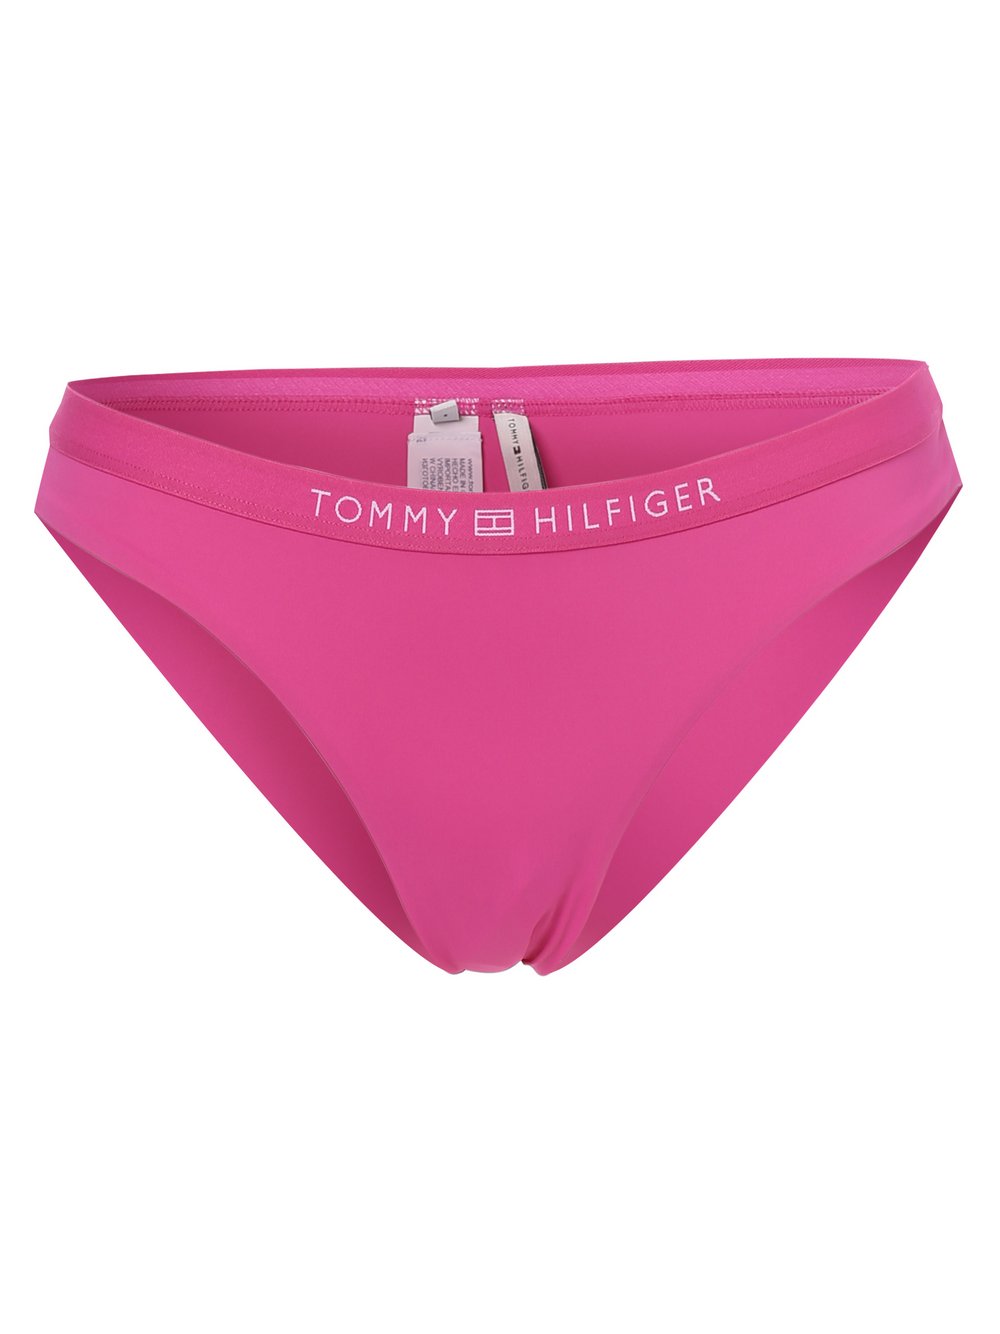 Tommy Hilfiger - Damskie slipki od bikini, wyrazisty róż